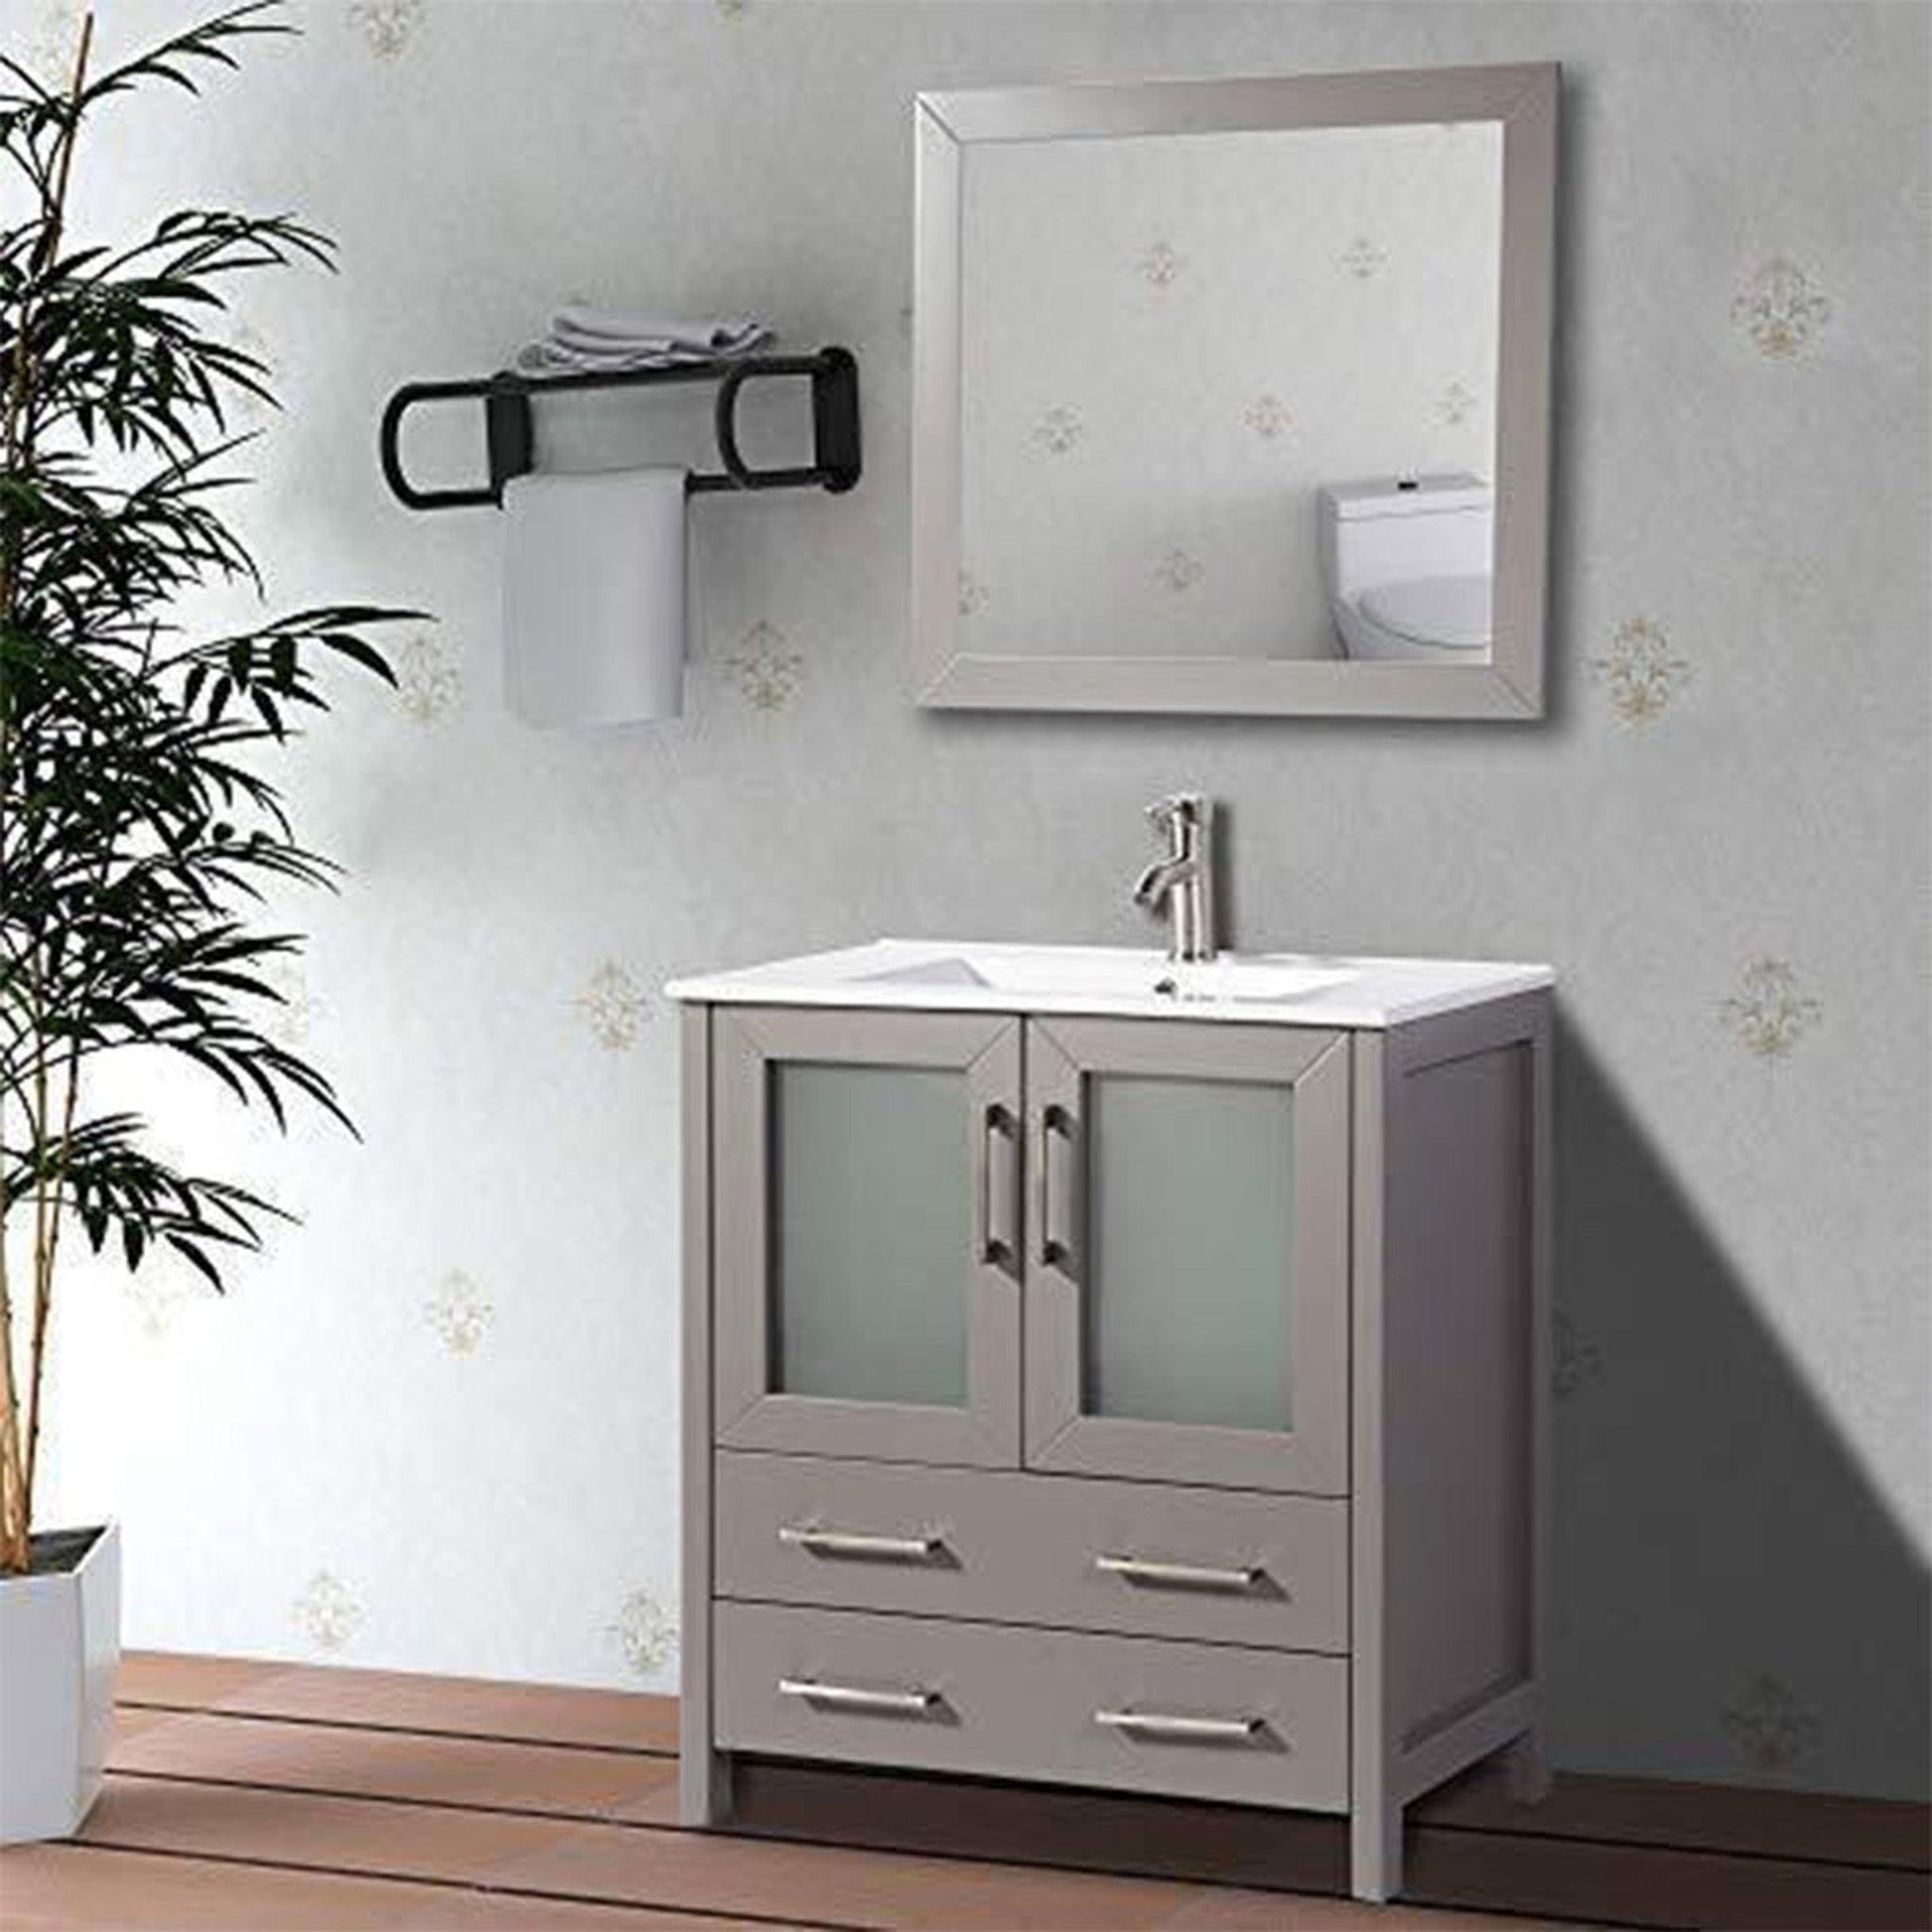 Bathroom Vanity Bath Sink Cabinet Pedestal Under Sink Storage with 2 Shelve  New